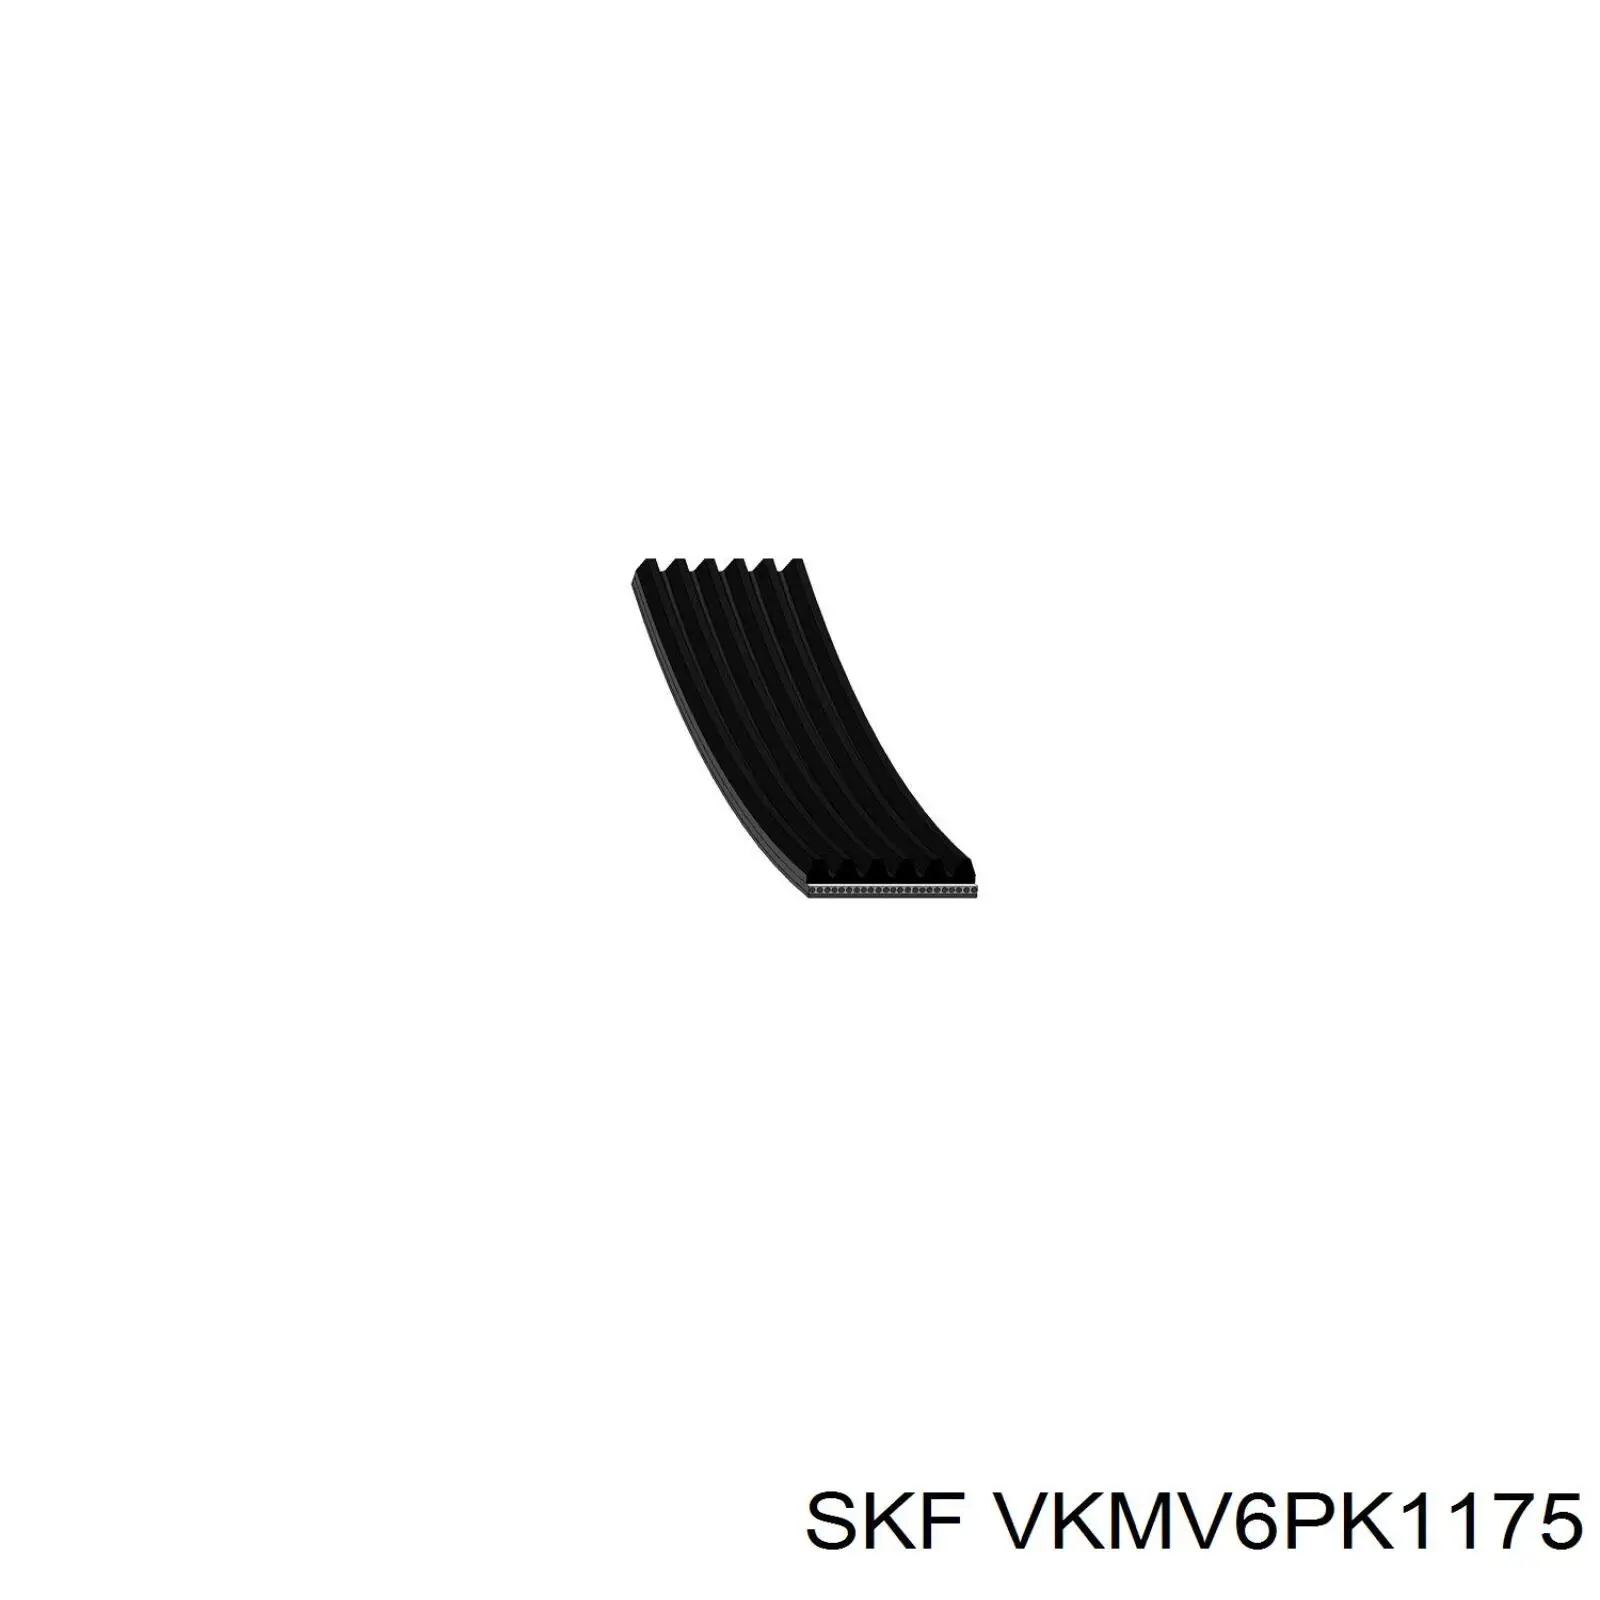 VKMV6PK1175 SKF correa trapezoidal